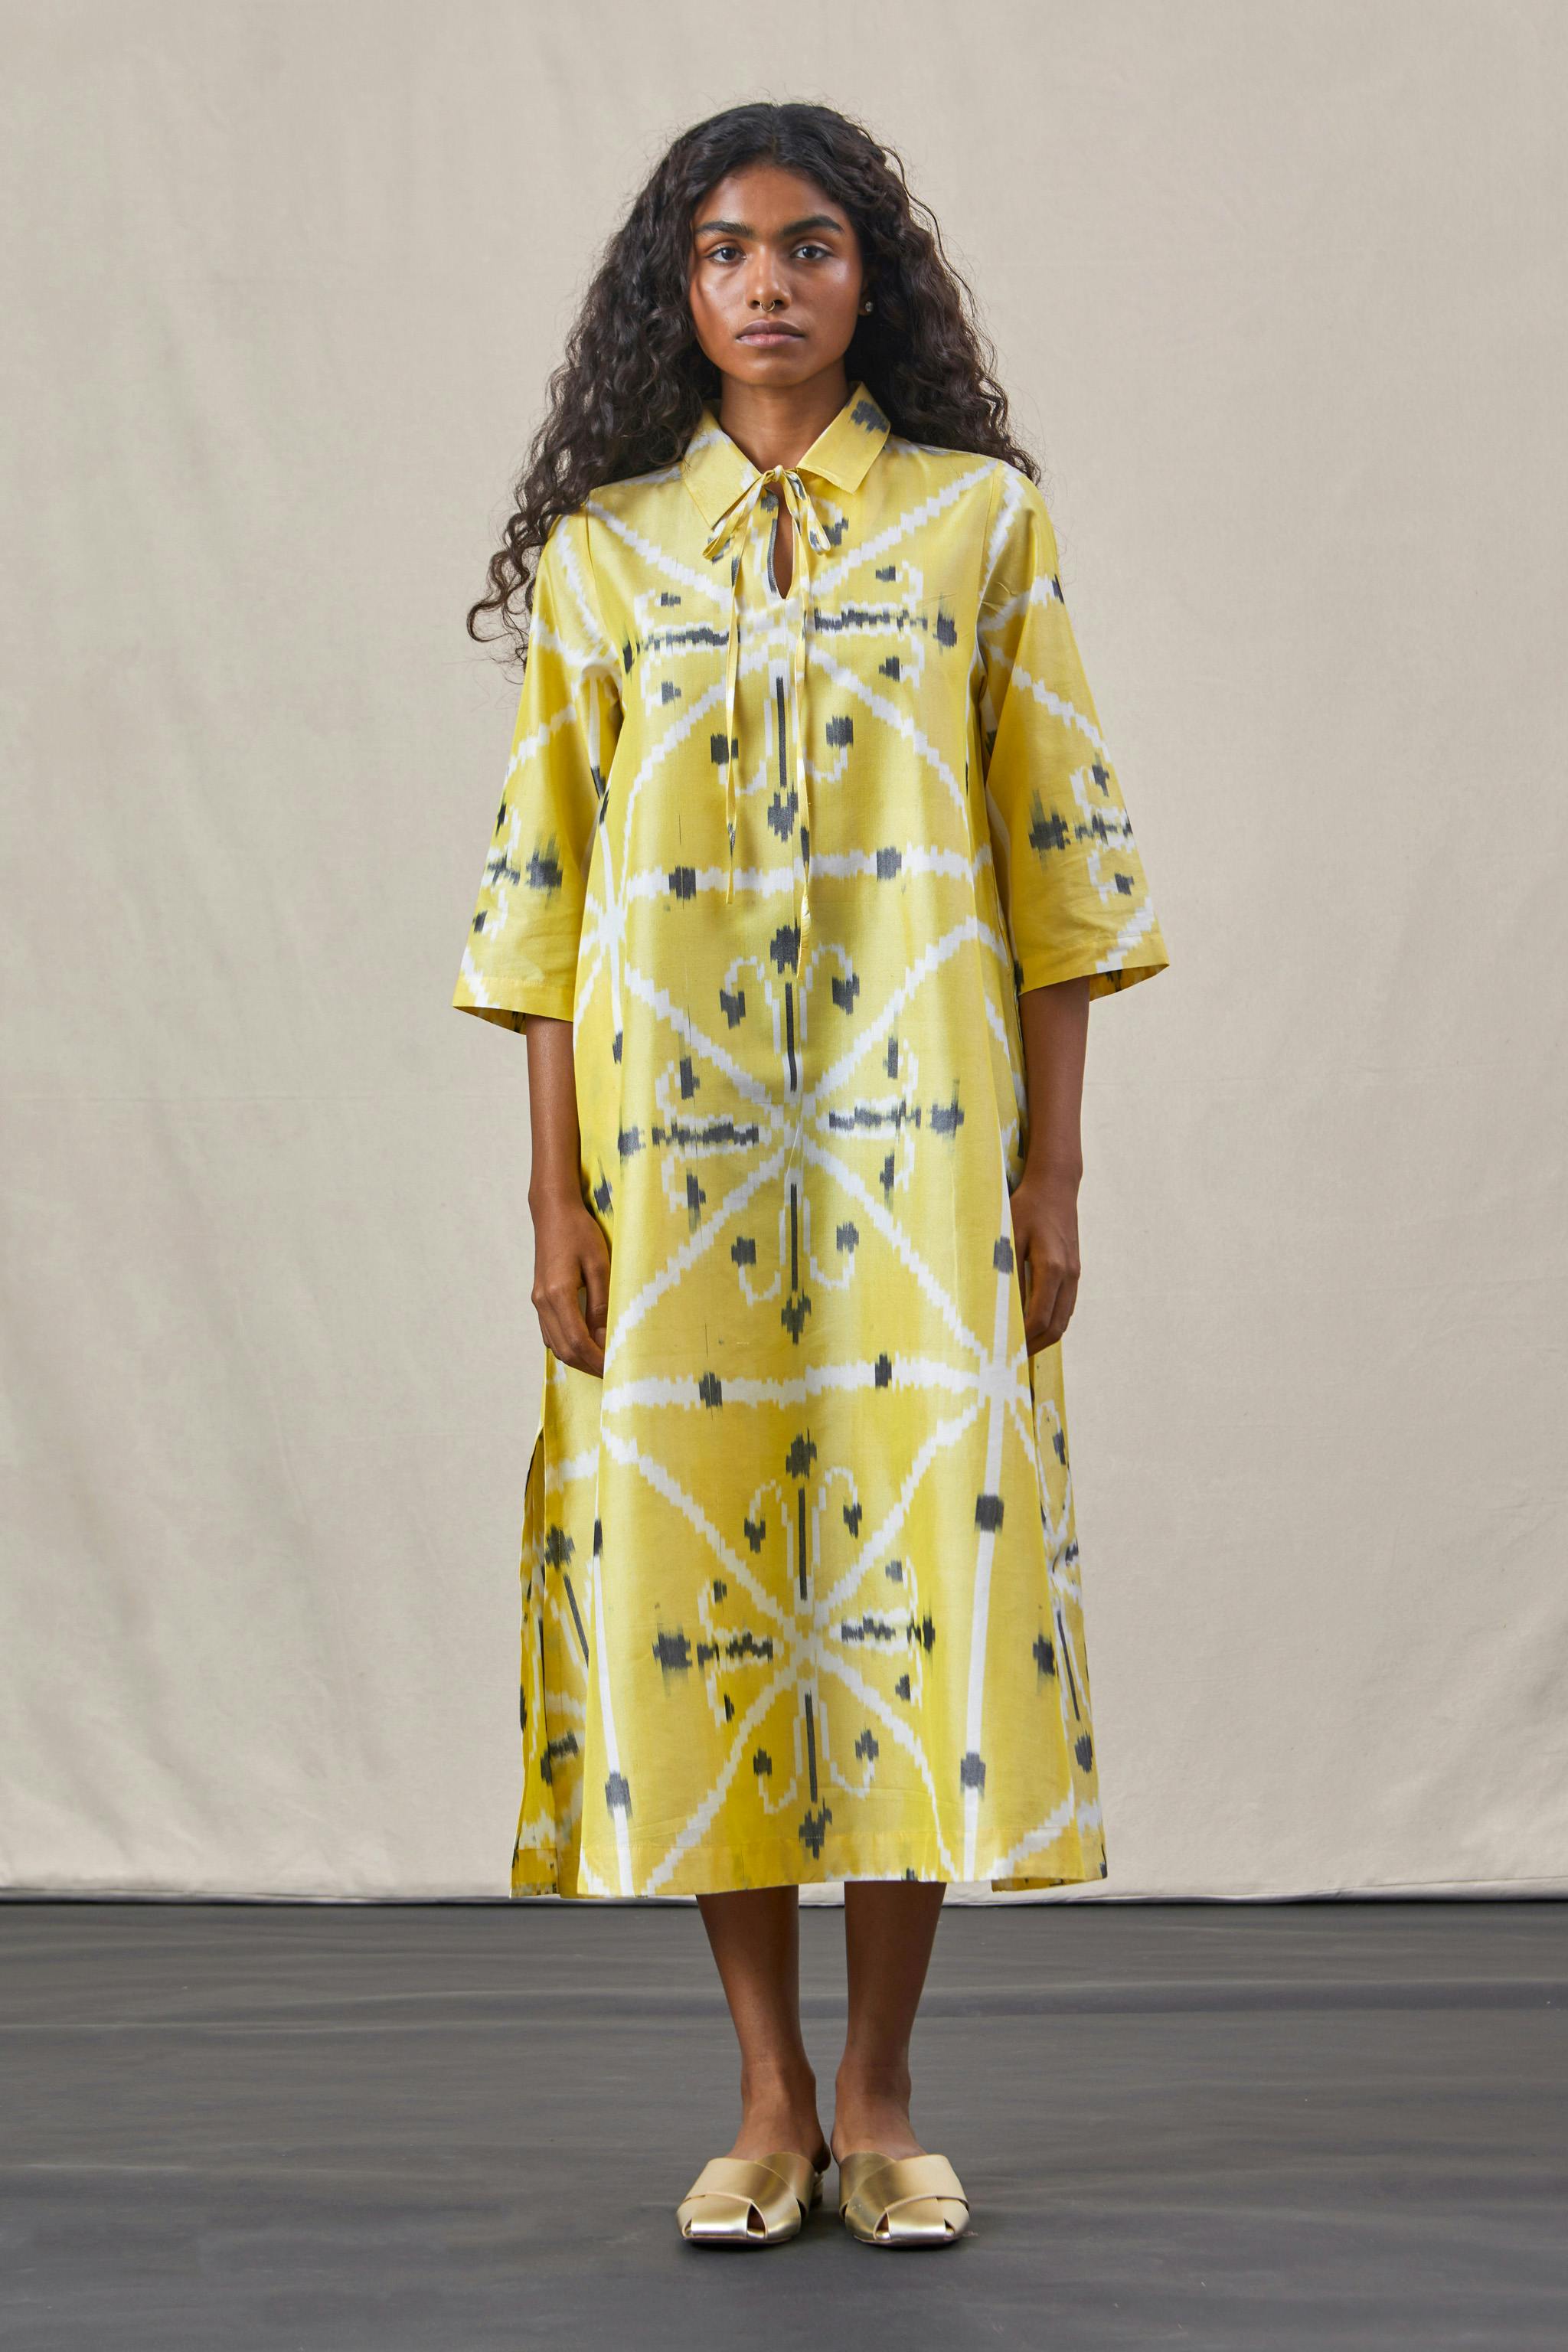 Kulaku - Ikat Dress Yellow, a product by The Summer House